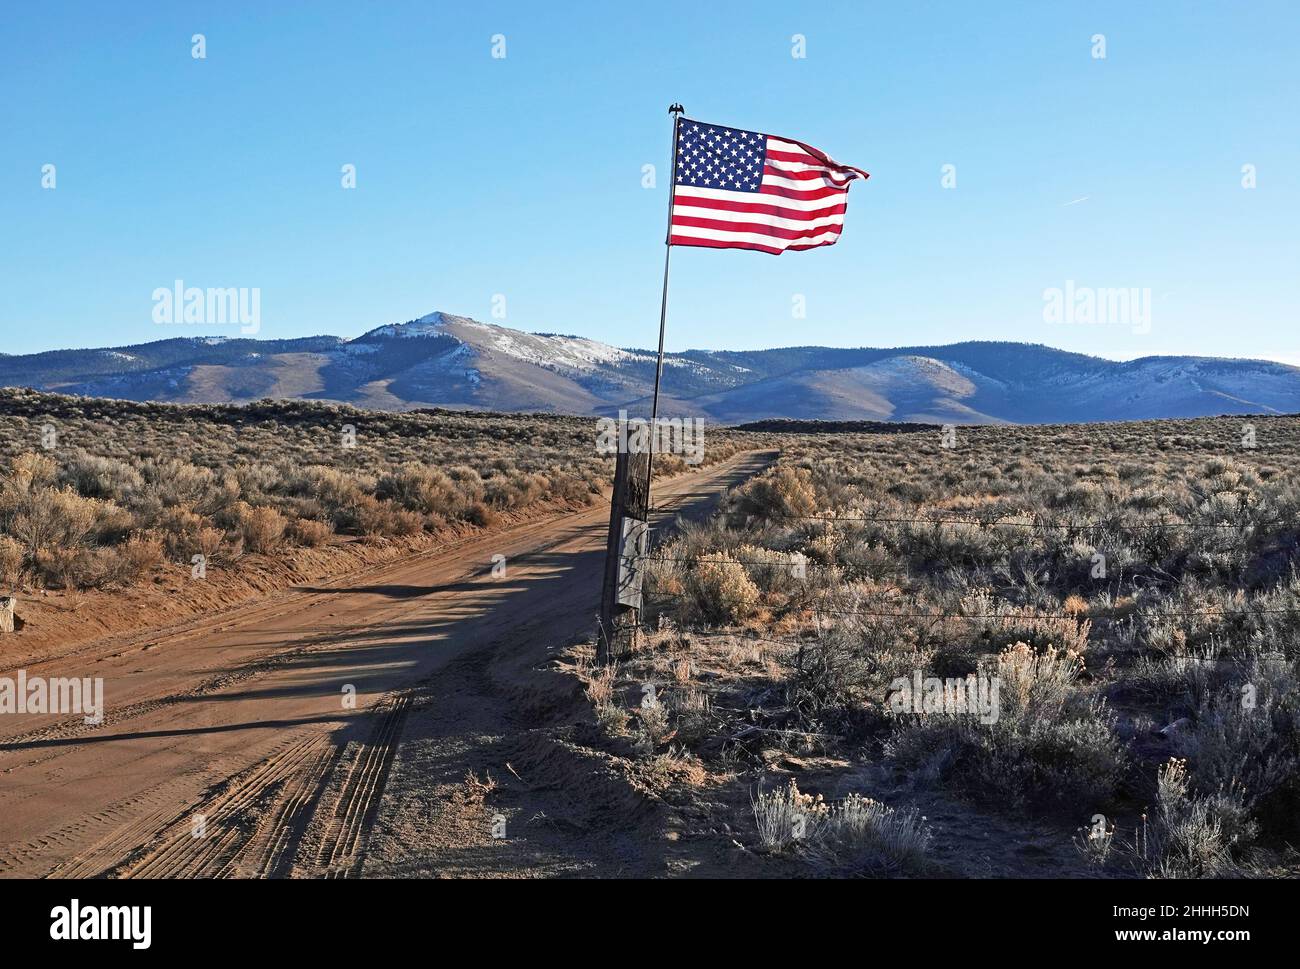 Una bandiera americana solana vola a un cancello ranch nella campagna dell'Oregon. Centinaia di nuove bandiere sono salite a porte simili nelle aziende agricole e nei ranch in tutto il centro Foto Stock